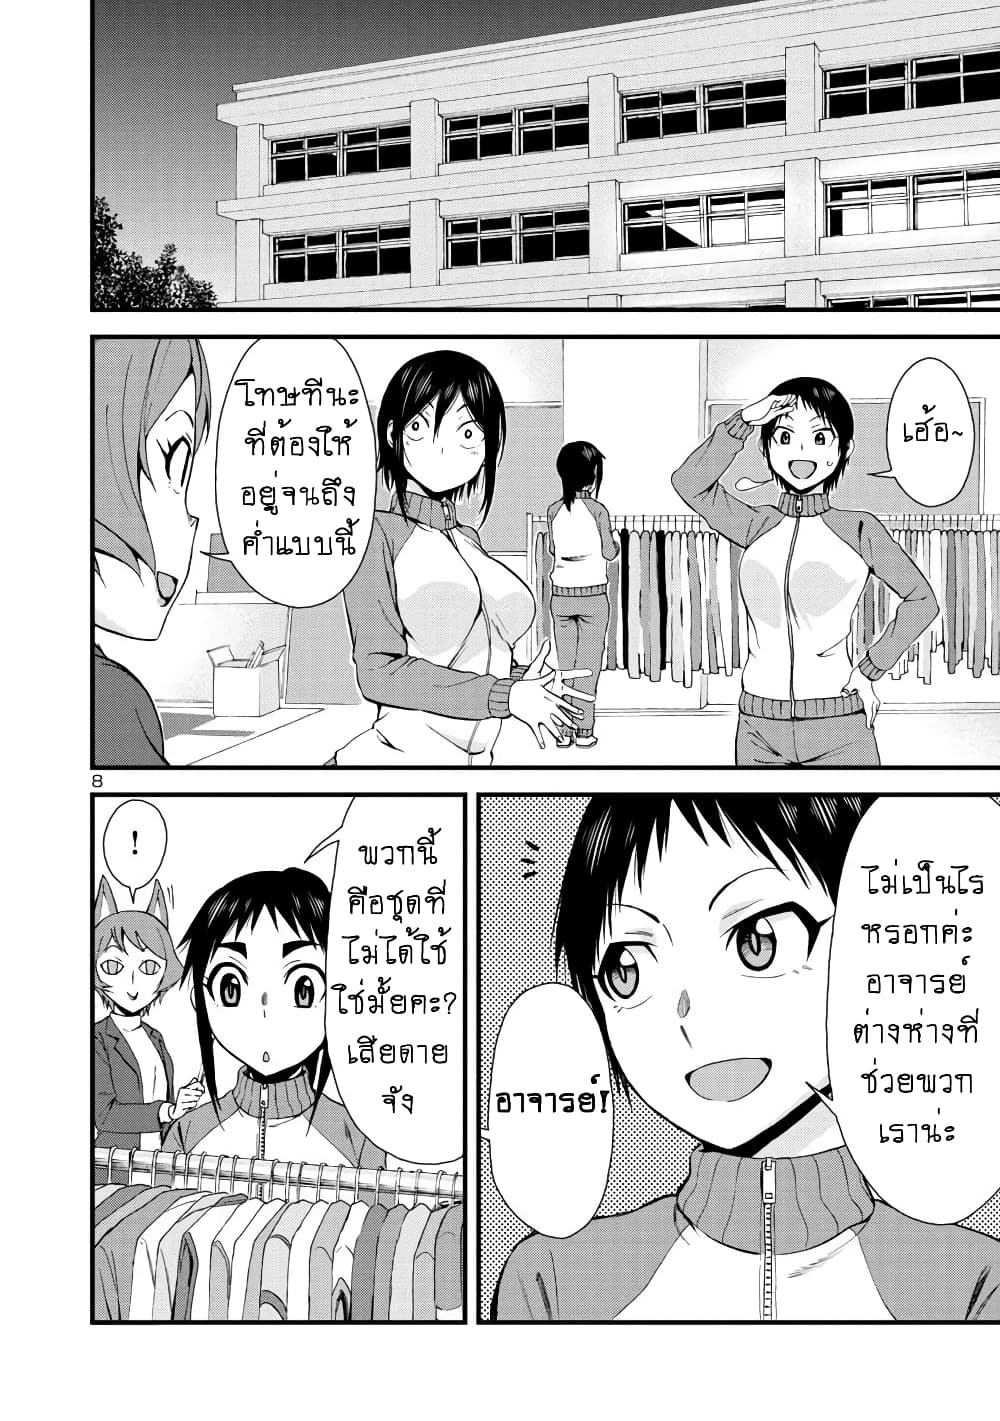 Hitomi-chan Is Shy With Strangers วันๆของน้องฮิโตมิก็เป็นแบบนี้แหล่ะ 32-32